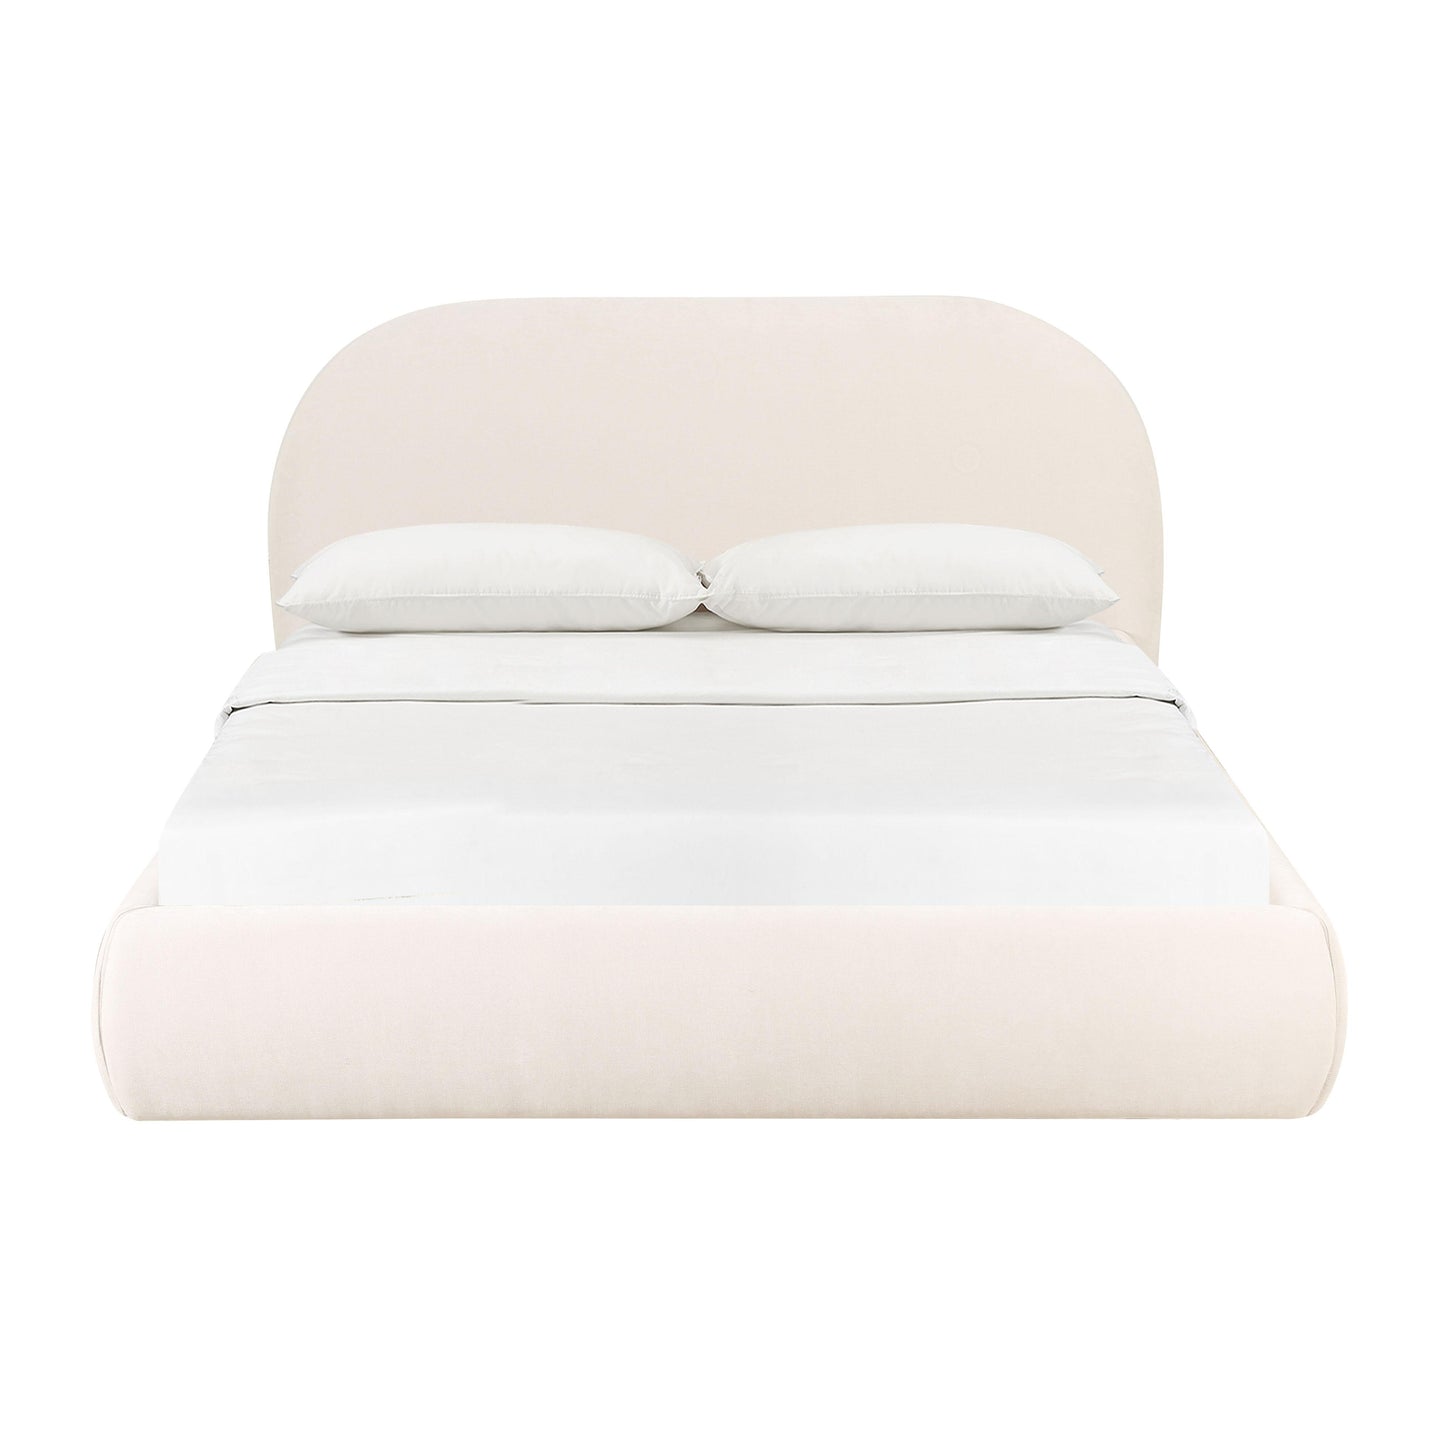 athara cream textured velvet king bed